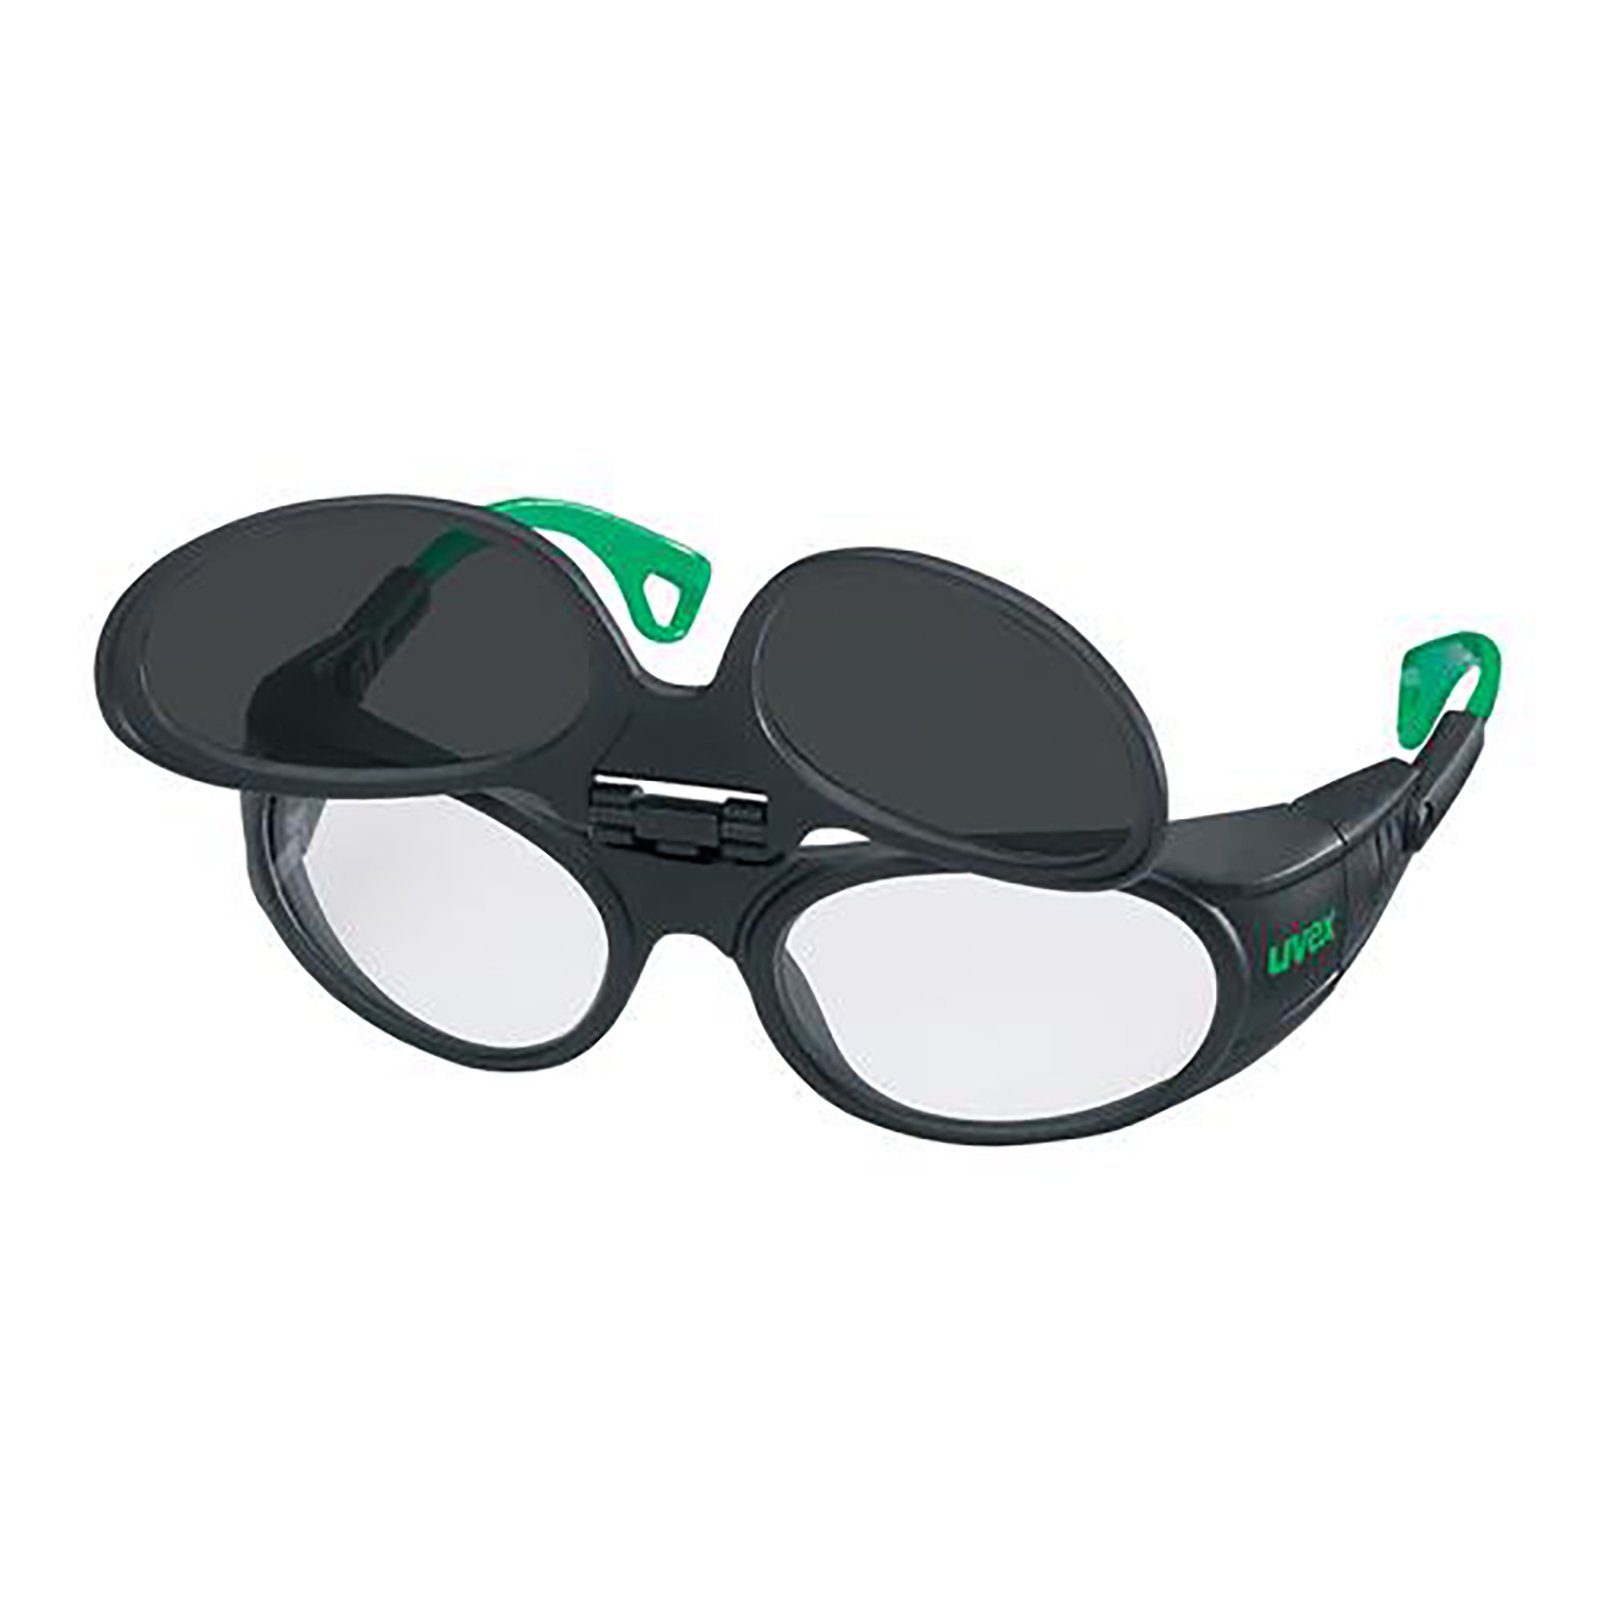 Schweißerschutz Arbeitsschutzbrille Uvex 9104 5 Bügelbrille infradur grau